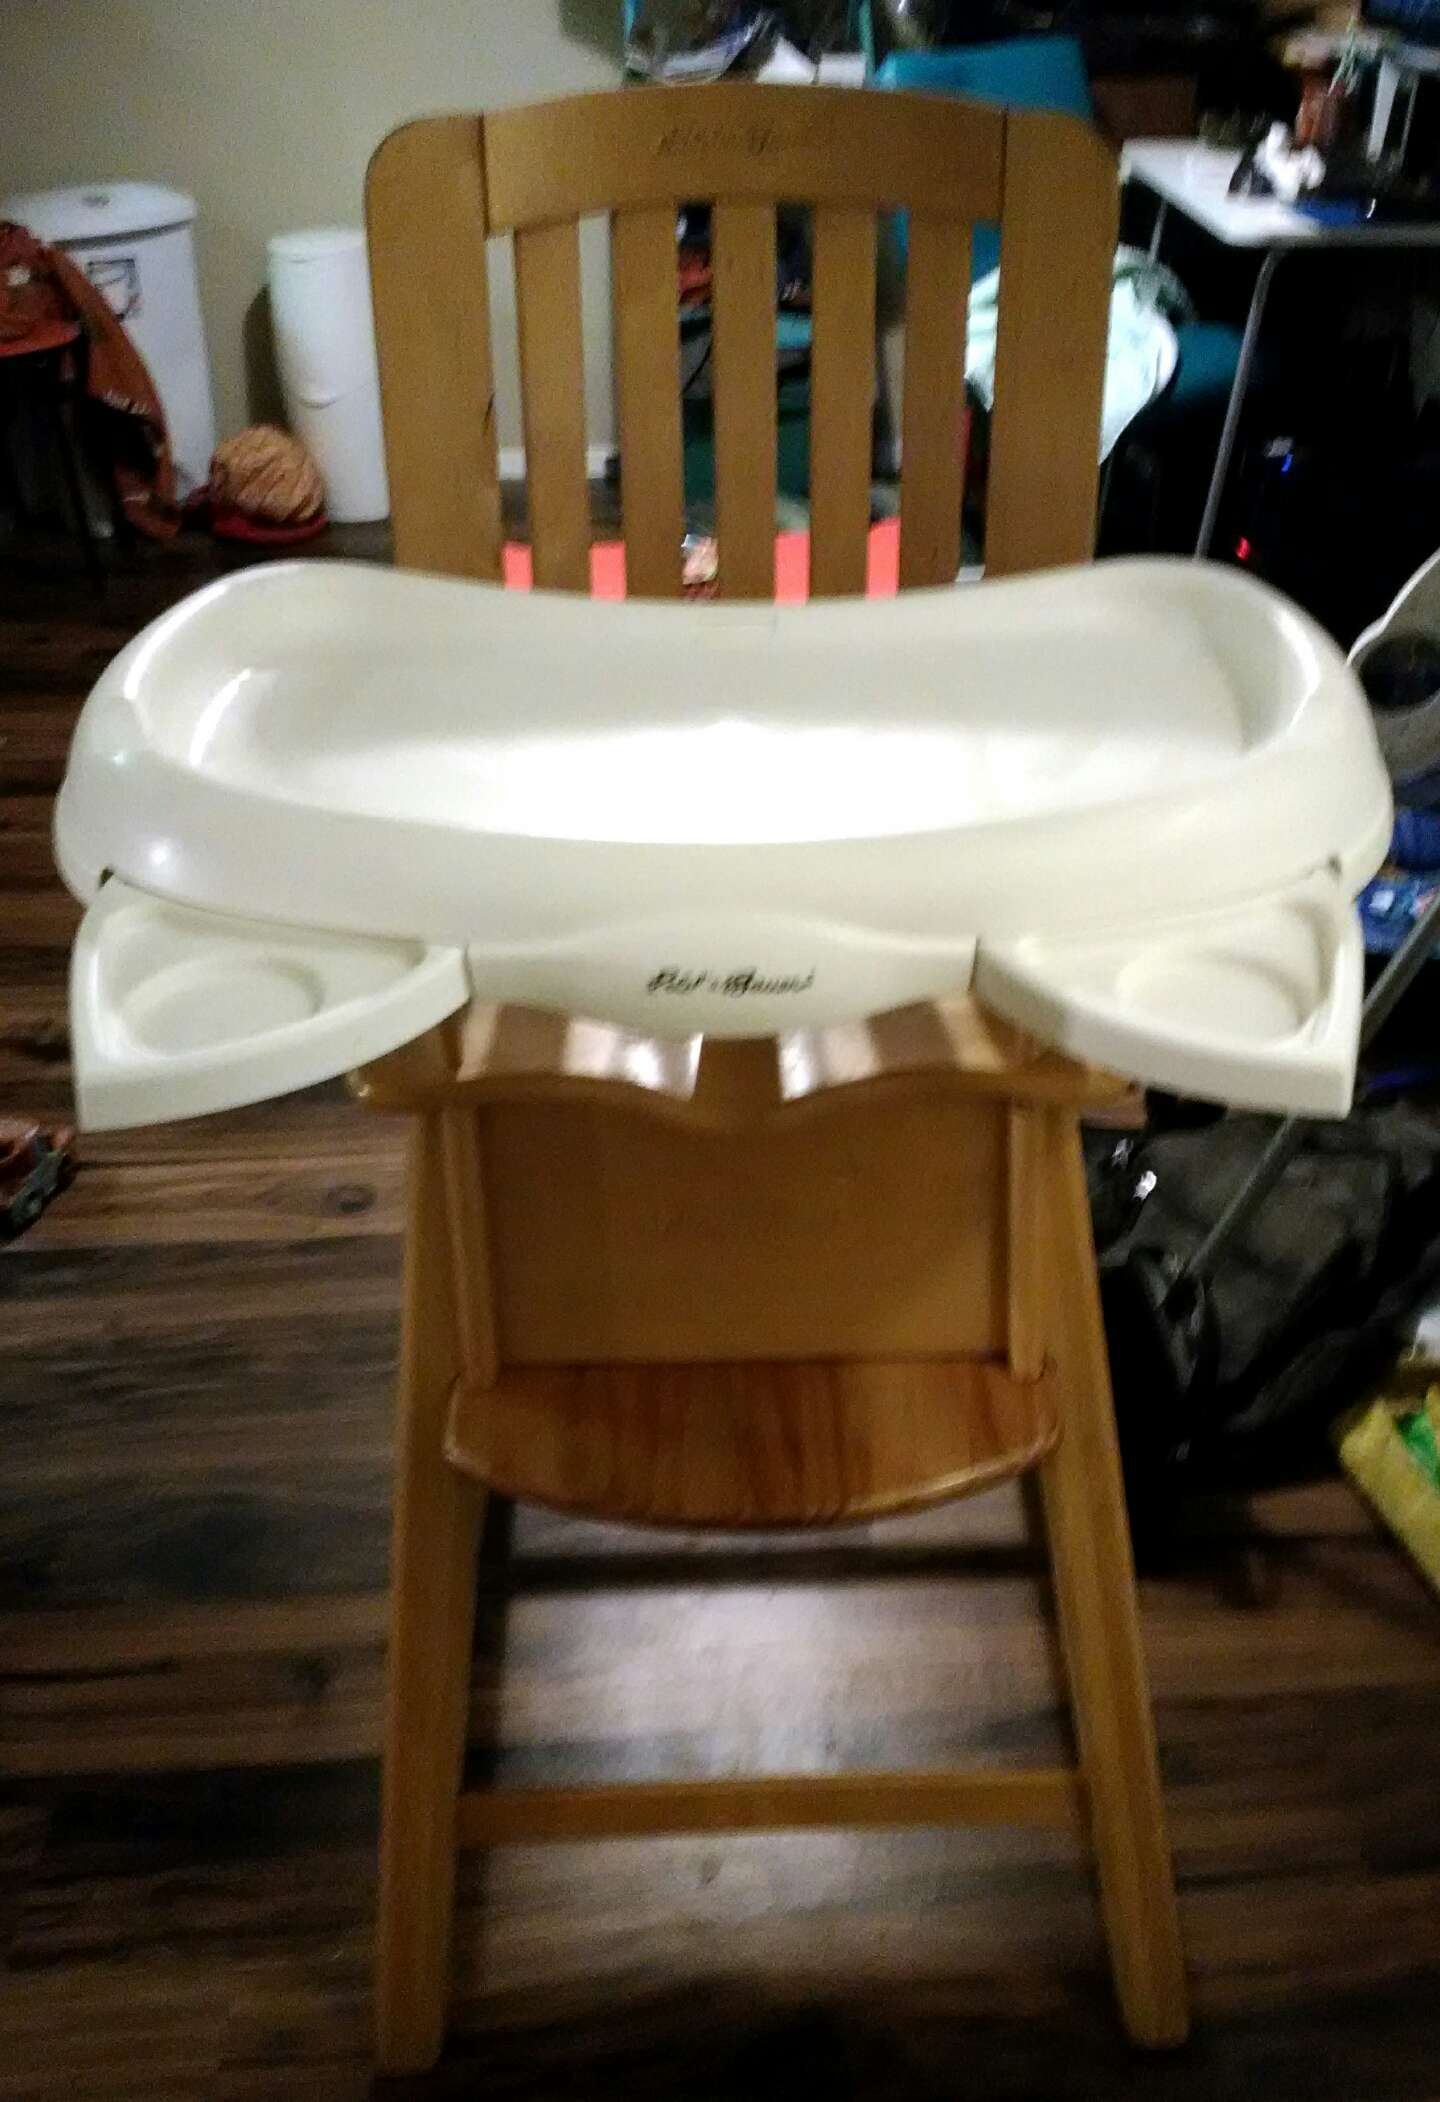 Eddie Bauer Wooden High Chair 03033 for sale in Austin, TX - 5miles